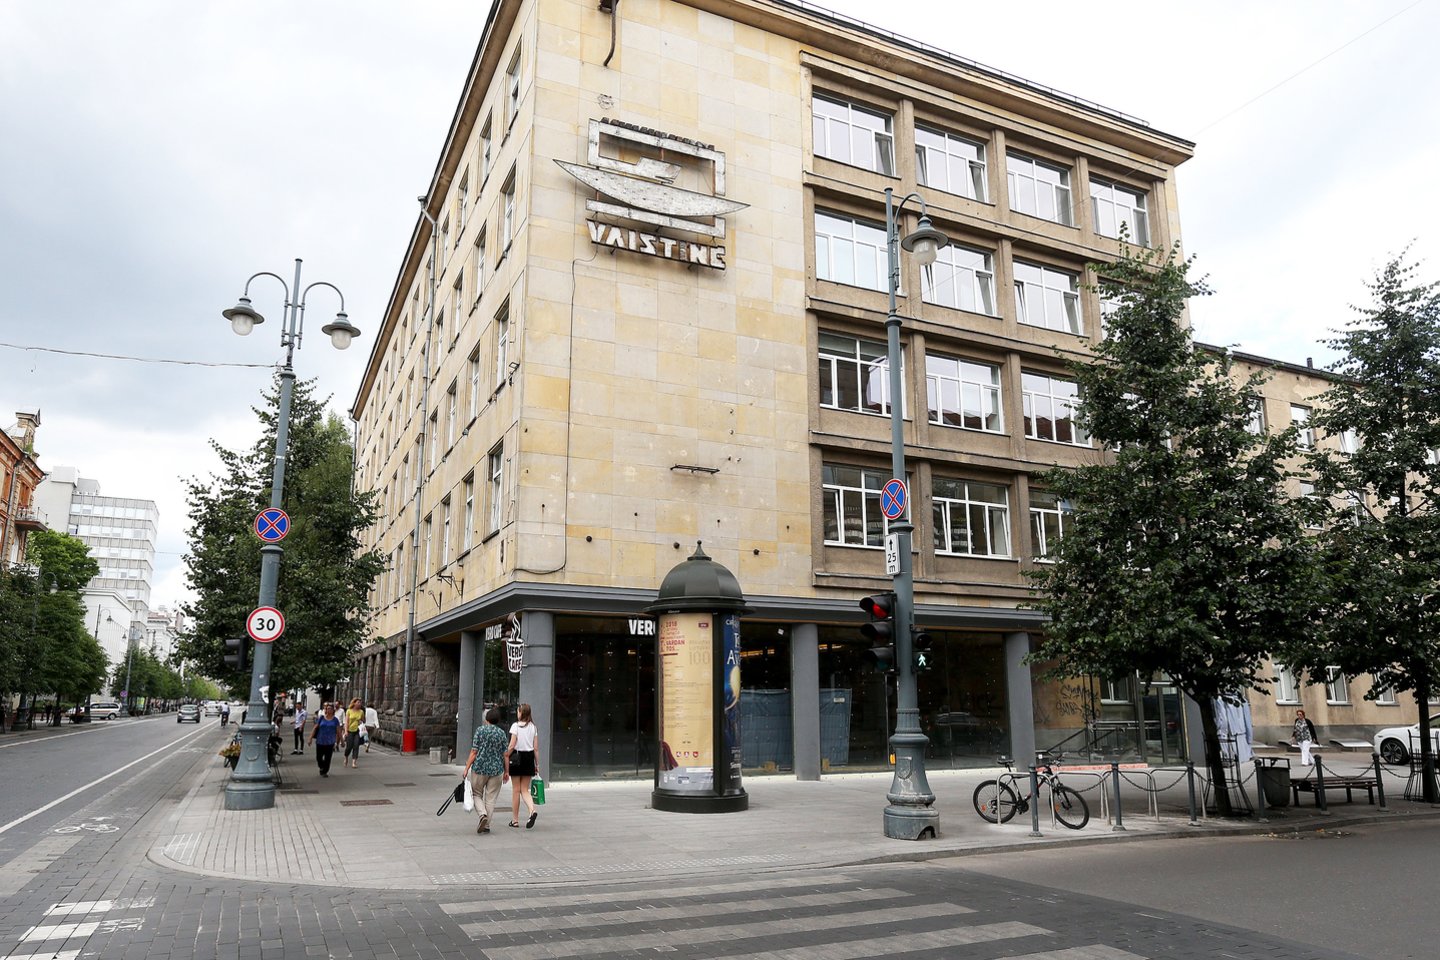 Teismas panaikino sostinės savivaldybės išduotus dokumentus, leidusius įstiklinti buvusio SAM pastato pirmą aukštą Gedimino prospekte Vilniuje.<br>R.Danisevičiaus nuotr.